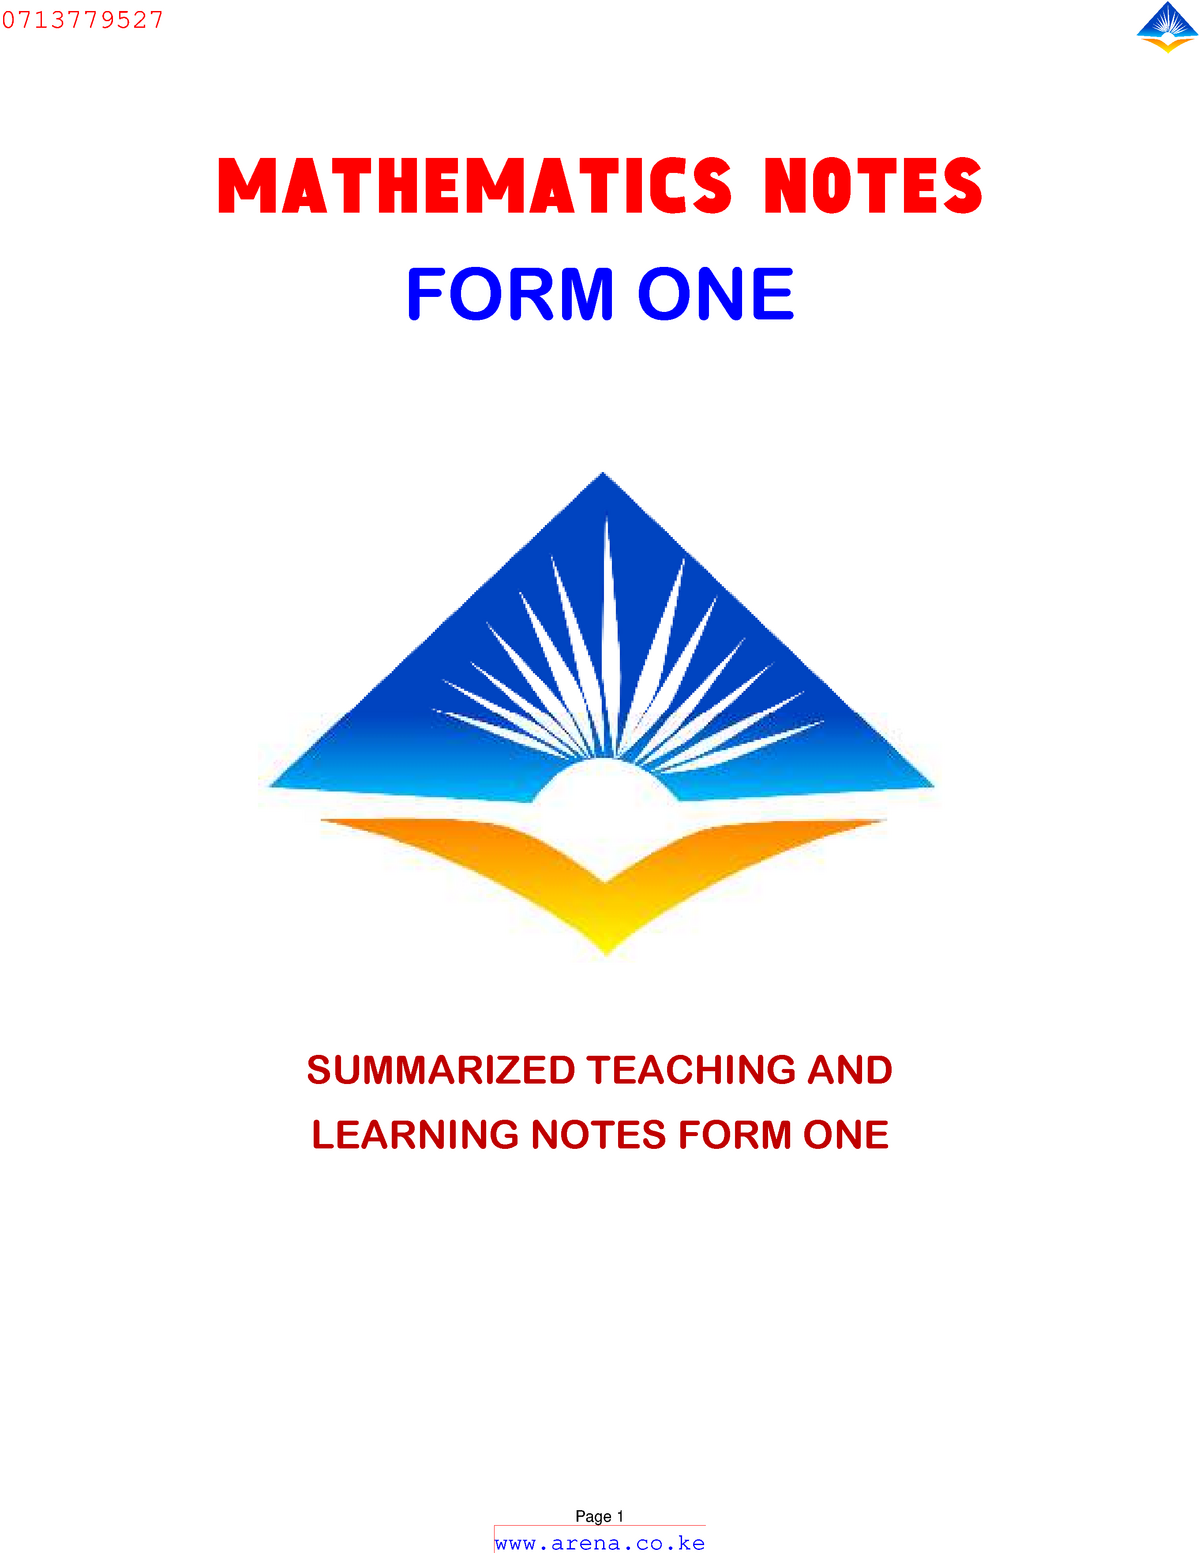 Mathematics FORM ONE Notes - MATHEMATICS NOTES FORM ONE SUMMARIZED ...